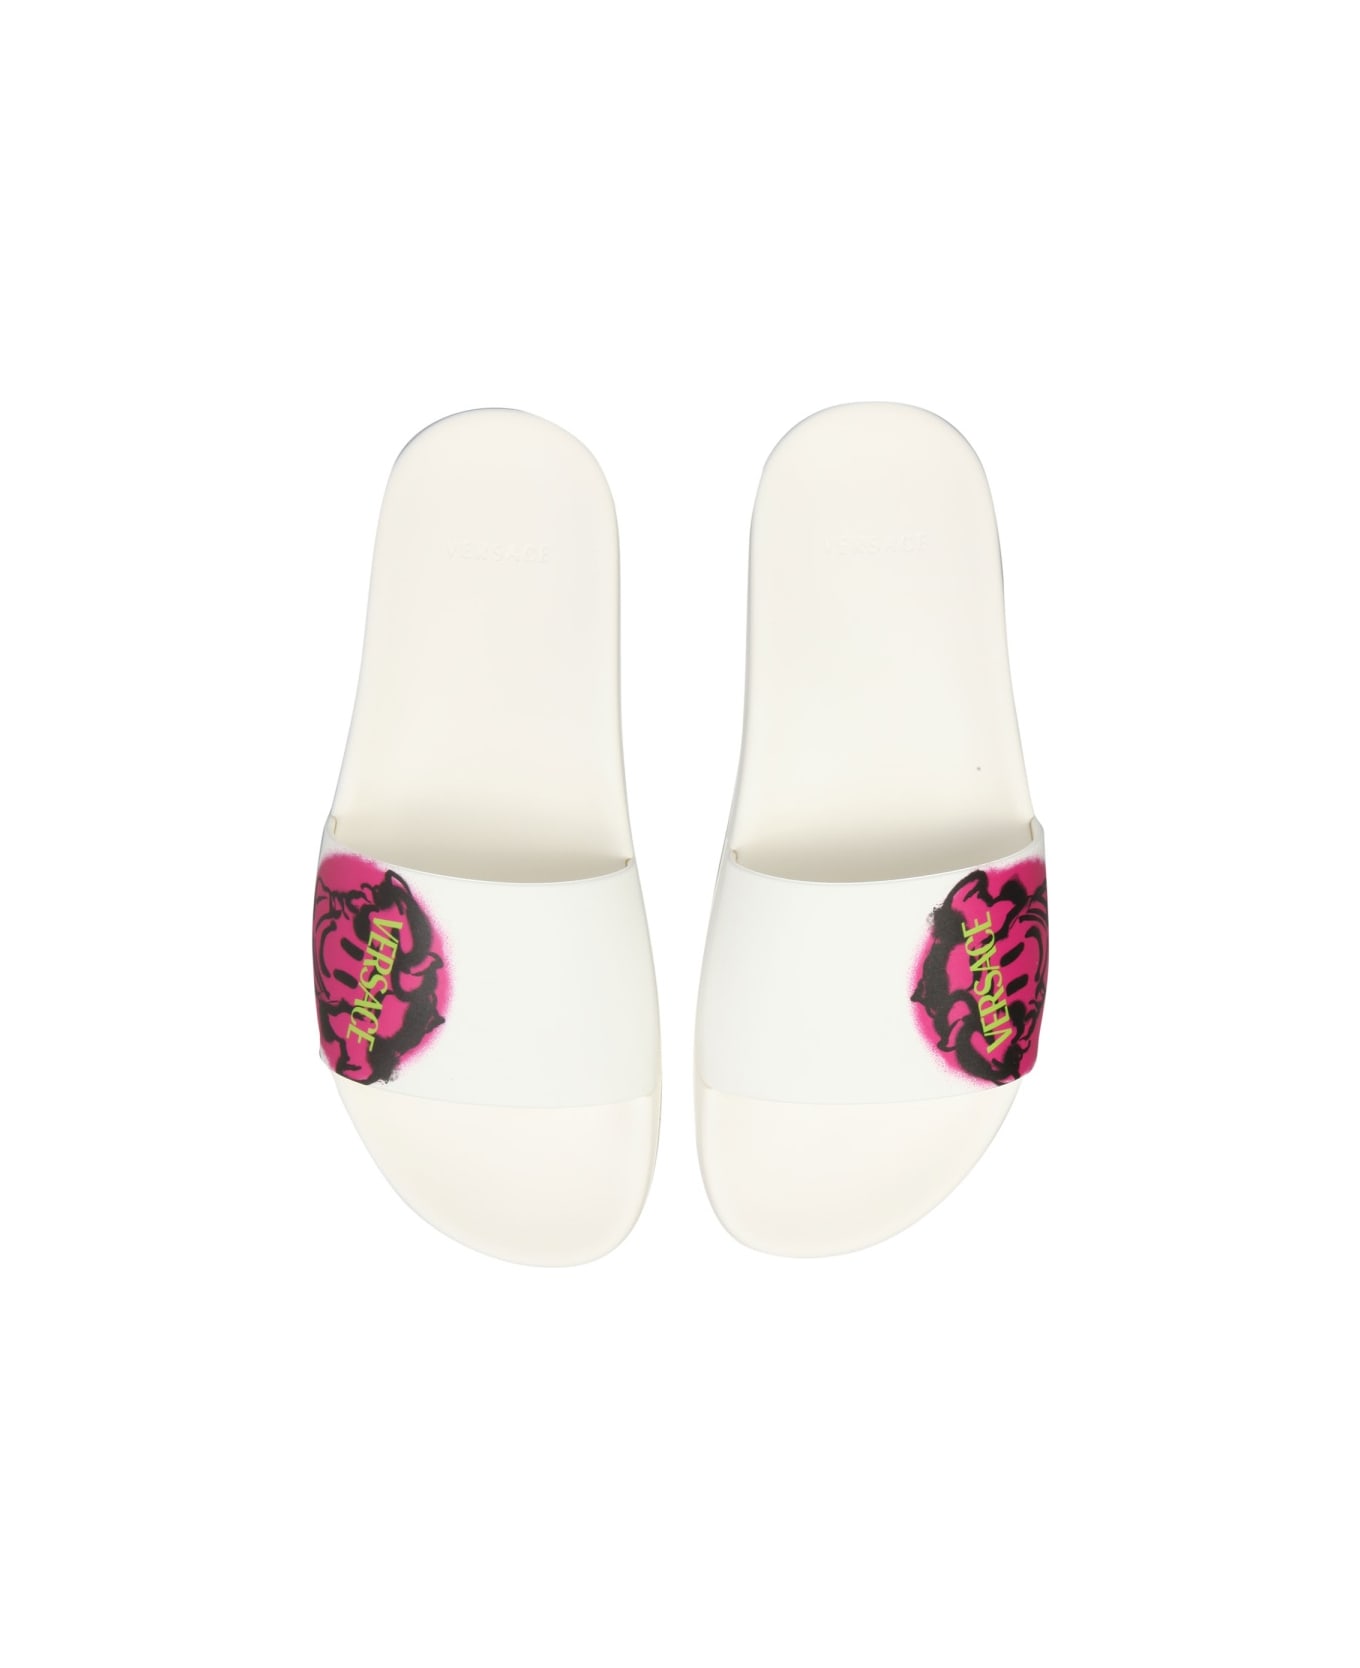 Versace Medusa Smiley Slide Sandals - WHITE